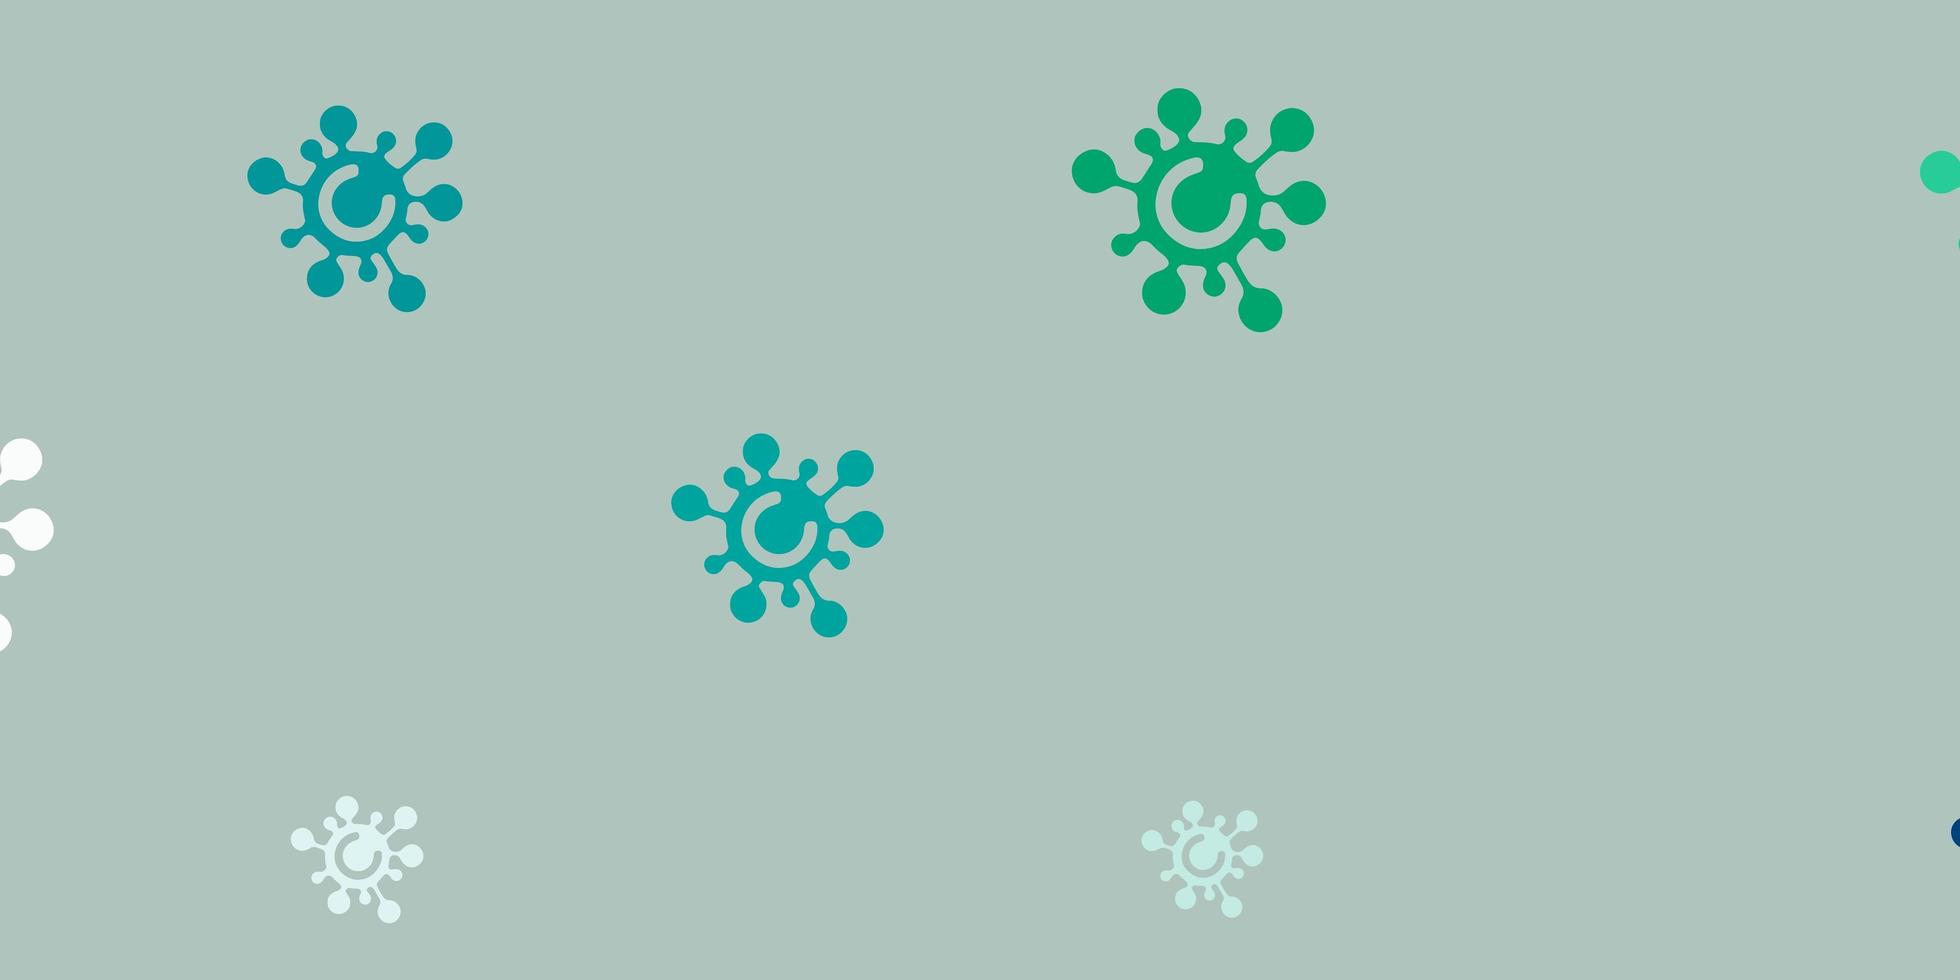 sfondo vettoriale verde chiaro con simboli di virus